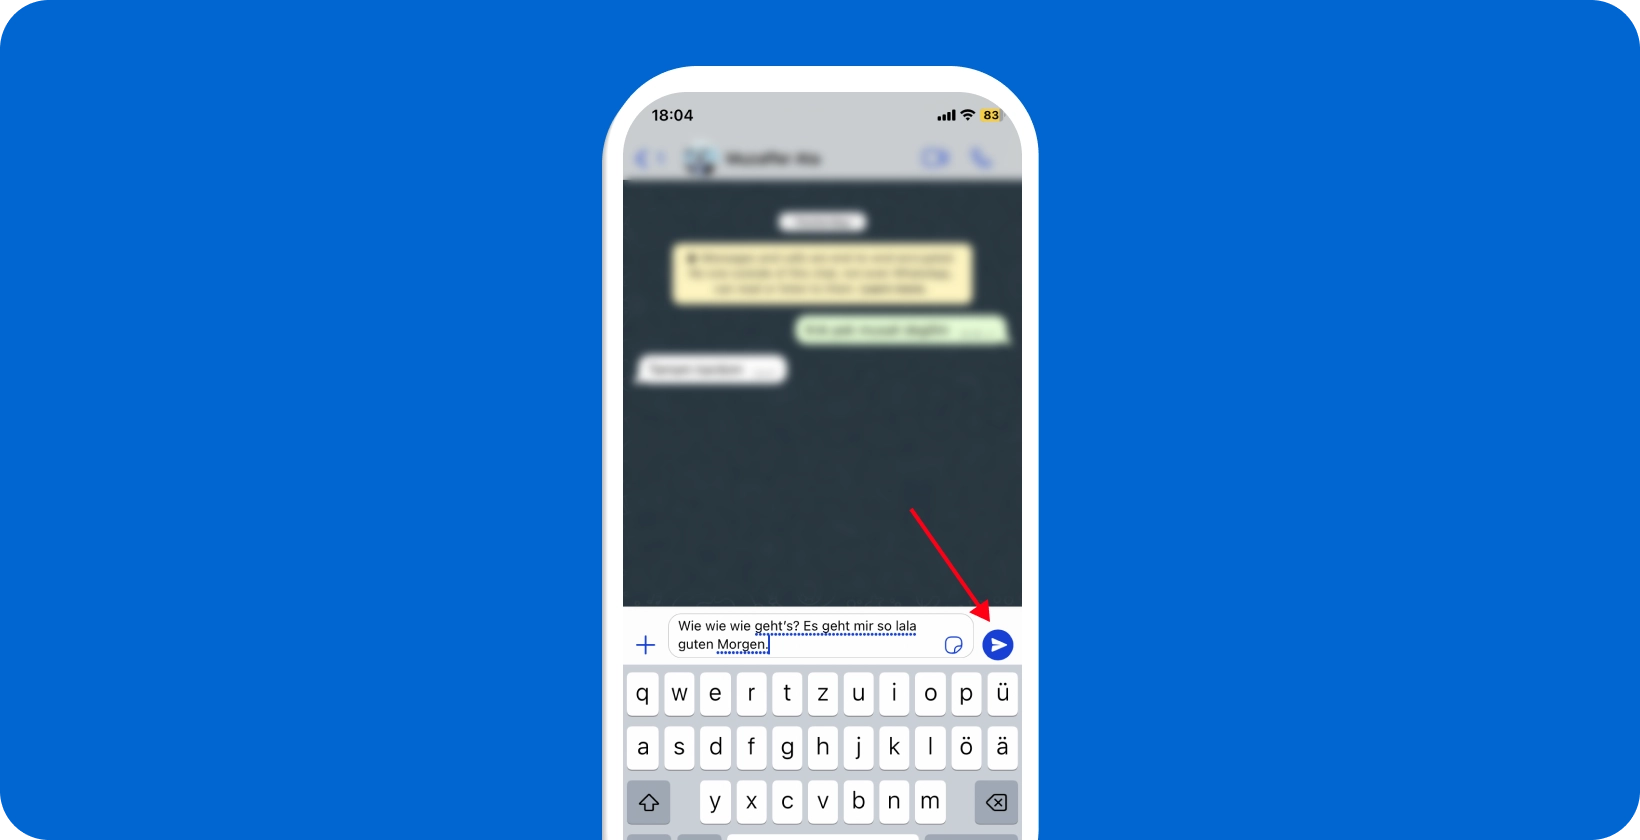 Schermo dello smartphone che mostra la funzione di dettatura vocale di WhatsApp in uso, con un'icona del microfono evidenziata.